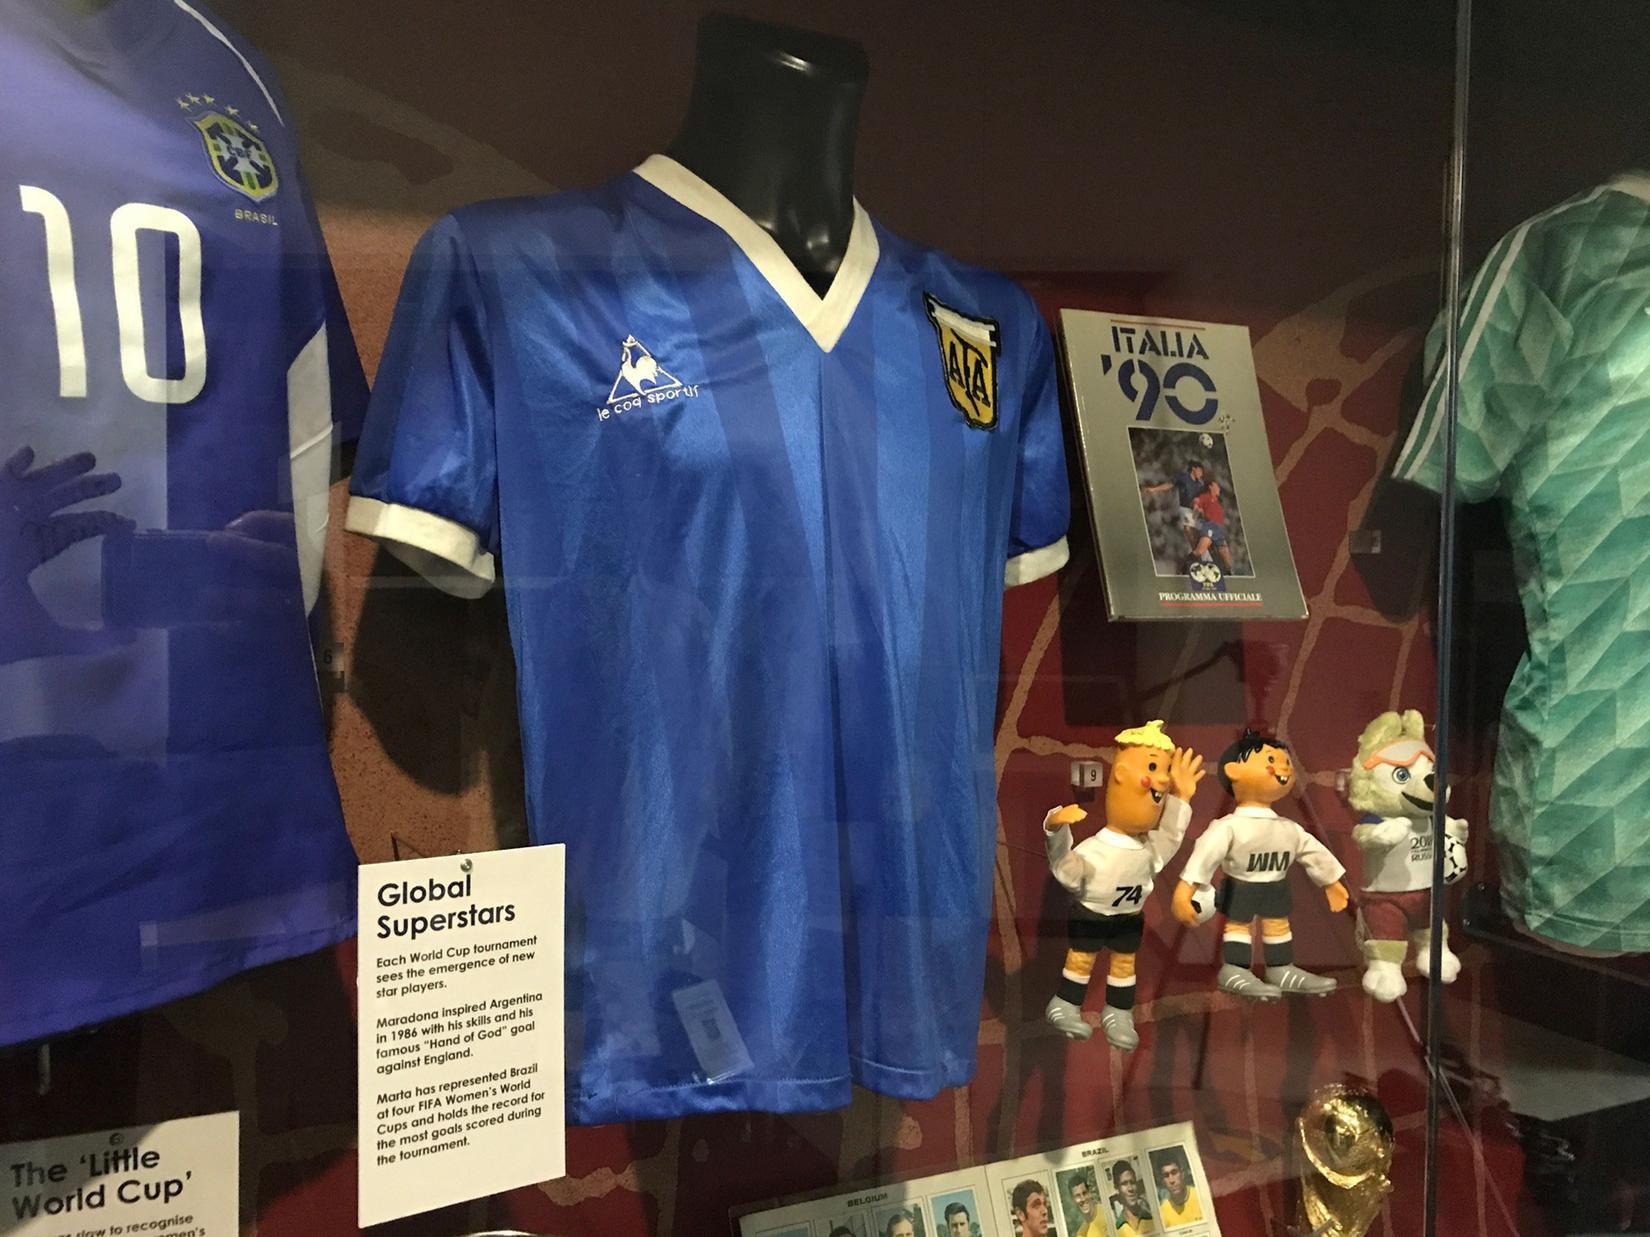 maradona jersey argentina